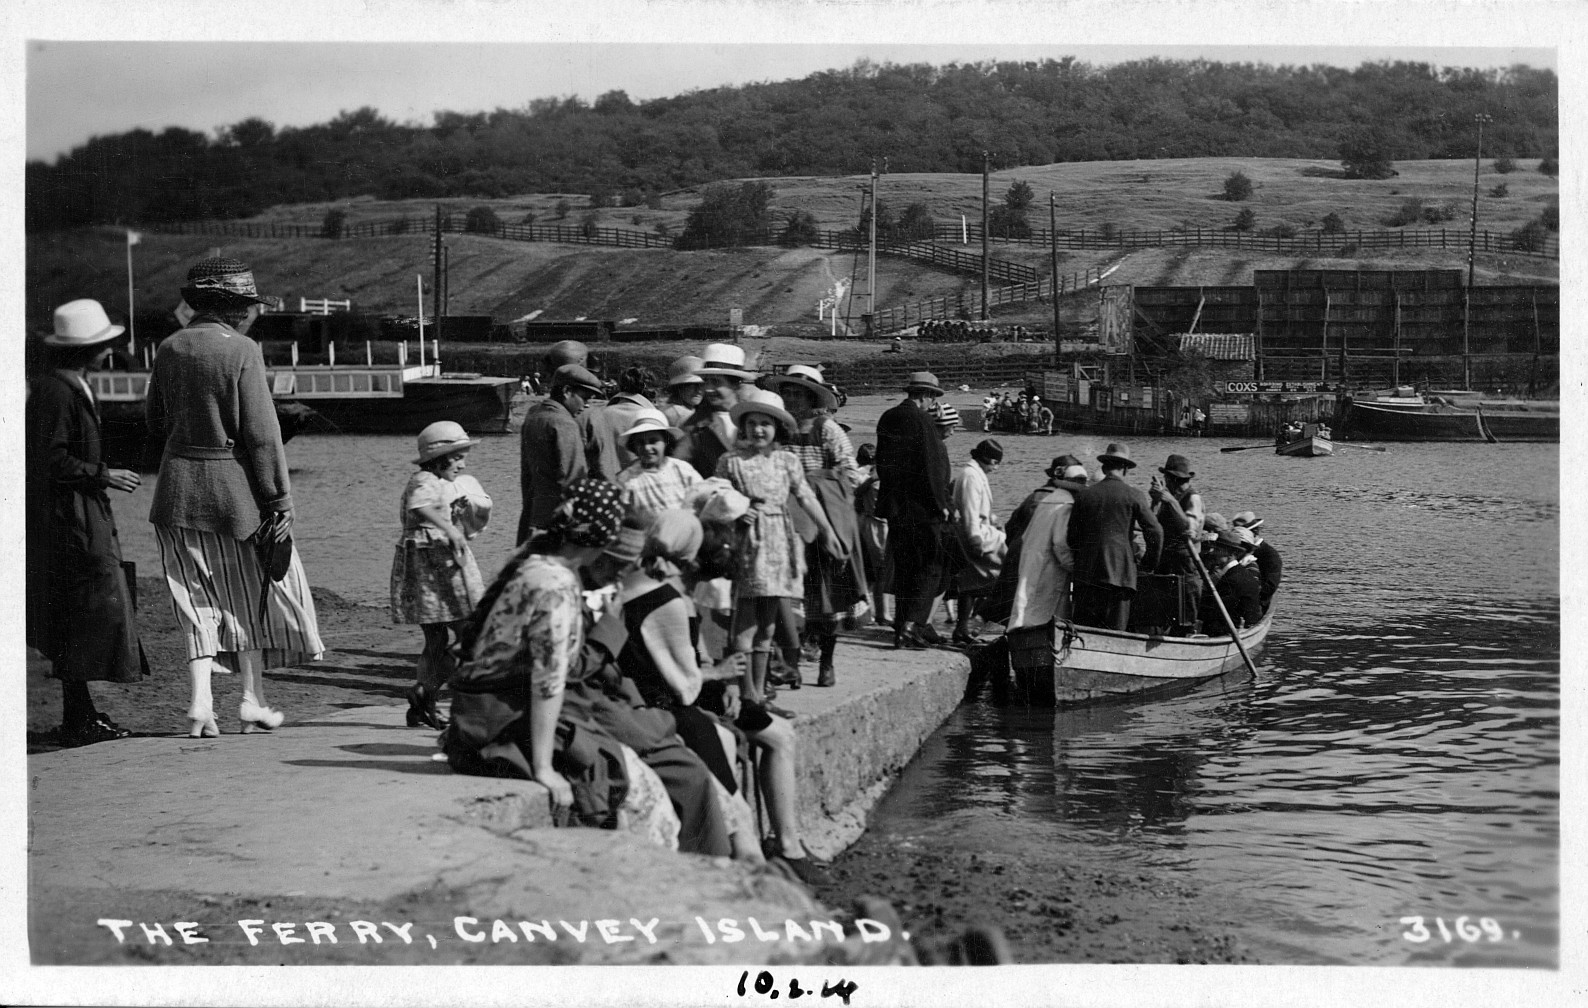 Canvey Island Benfleet crossing,Benfleet,river view